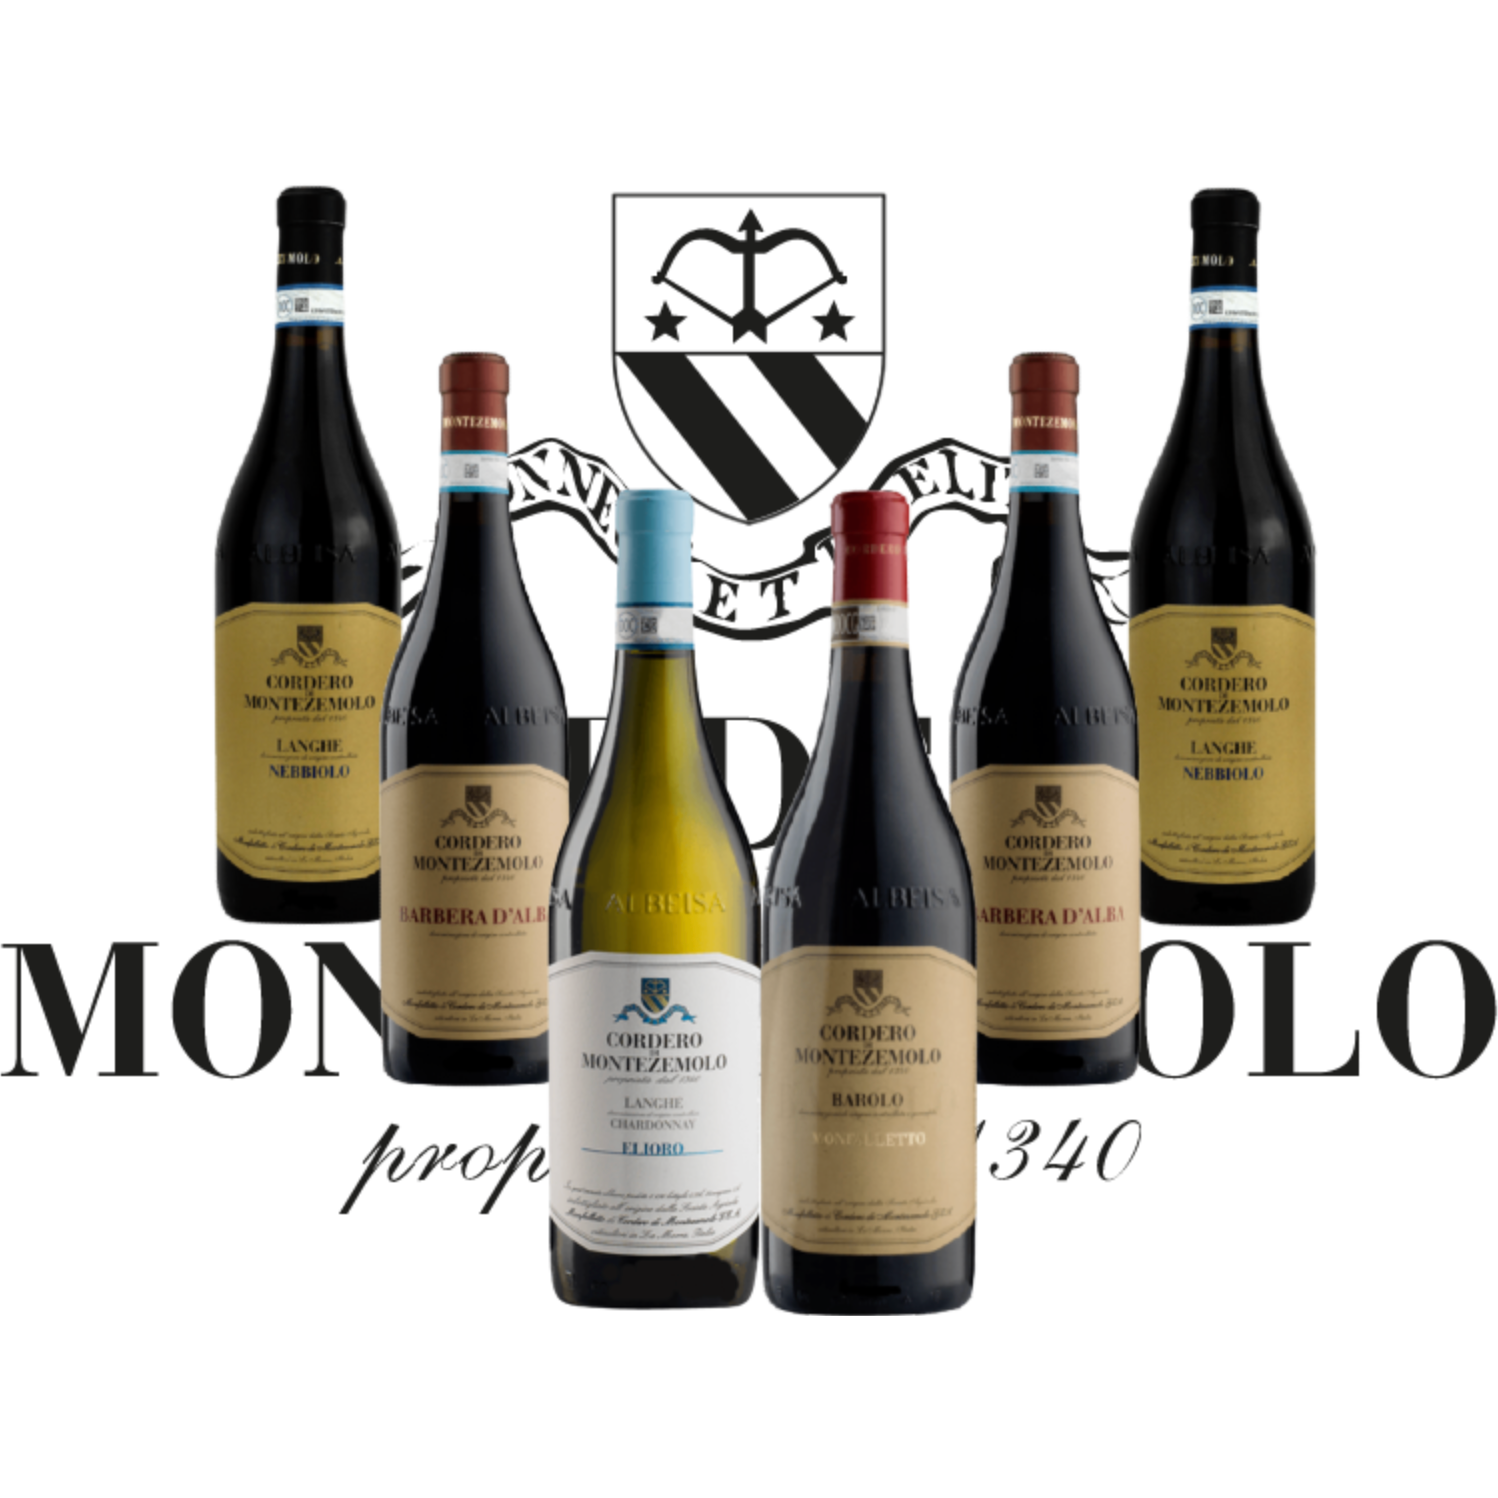 Luksus Piemonte smagekasse fra Cordero di Montezemolo - 1. Cru Barolo, Nebbiolo, Barbera, Chardonnay